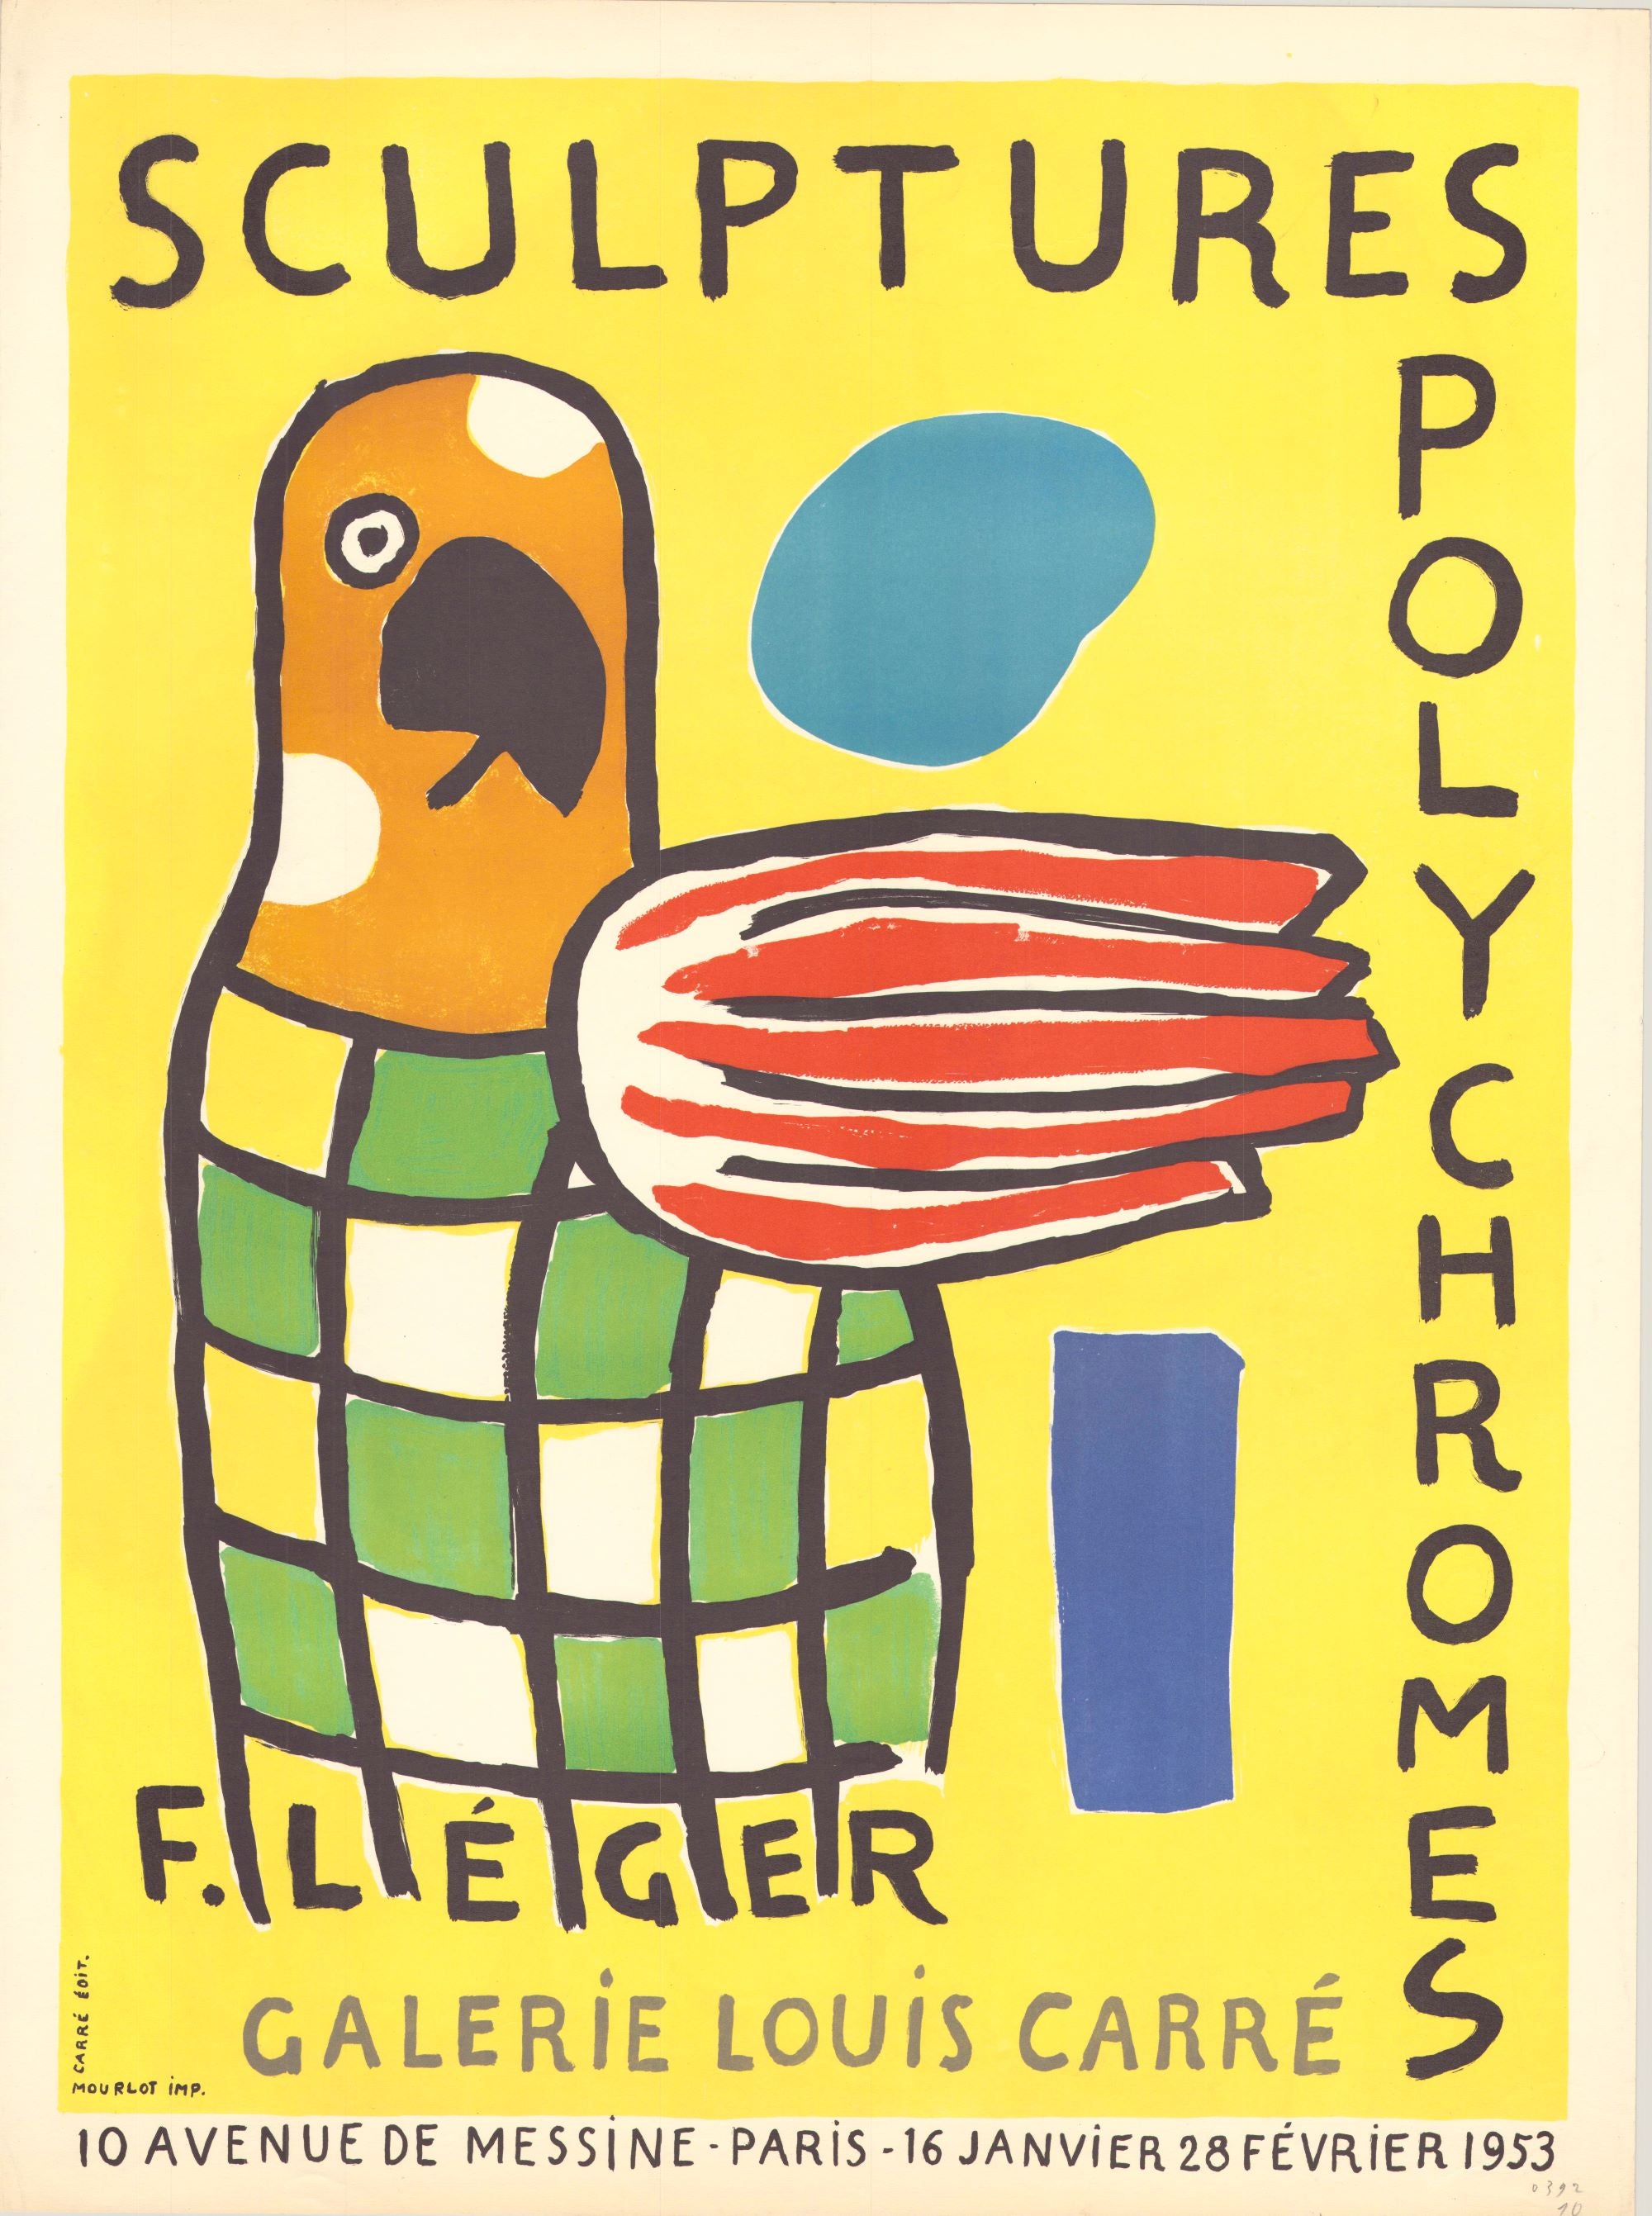 Sculptures Polychromes - Louis Carre Gallery, Paris 1953